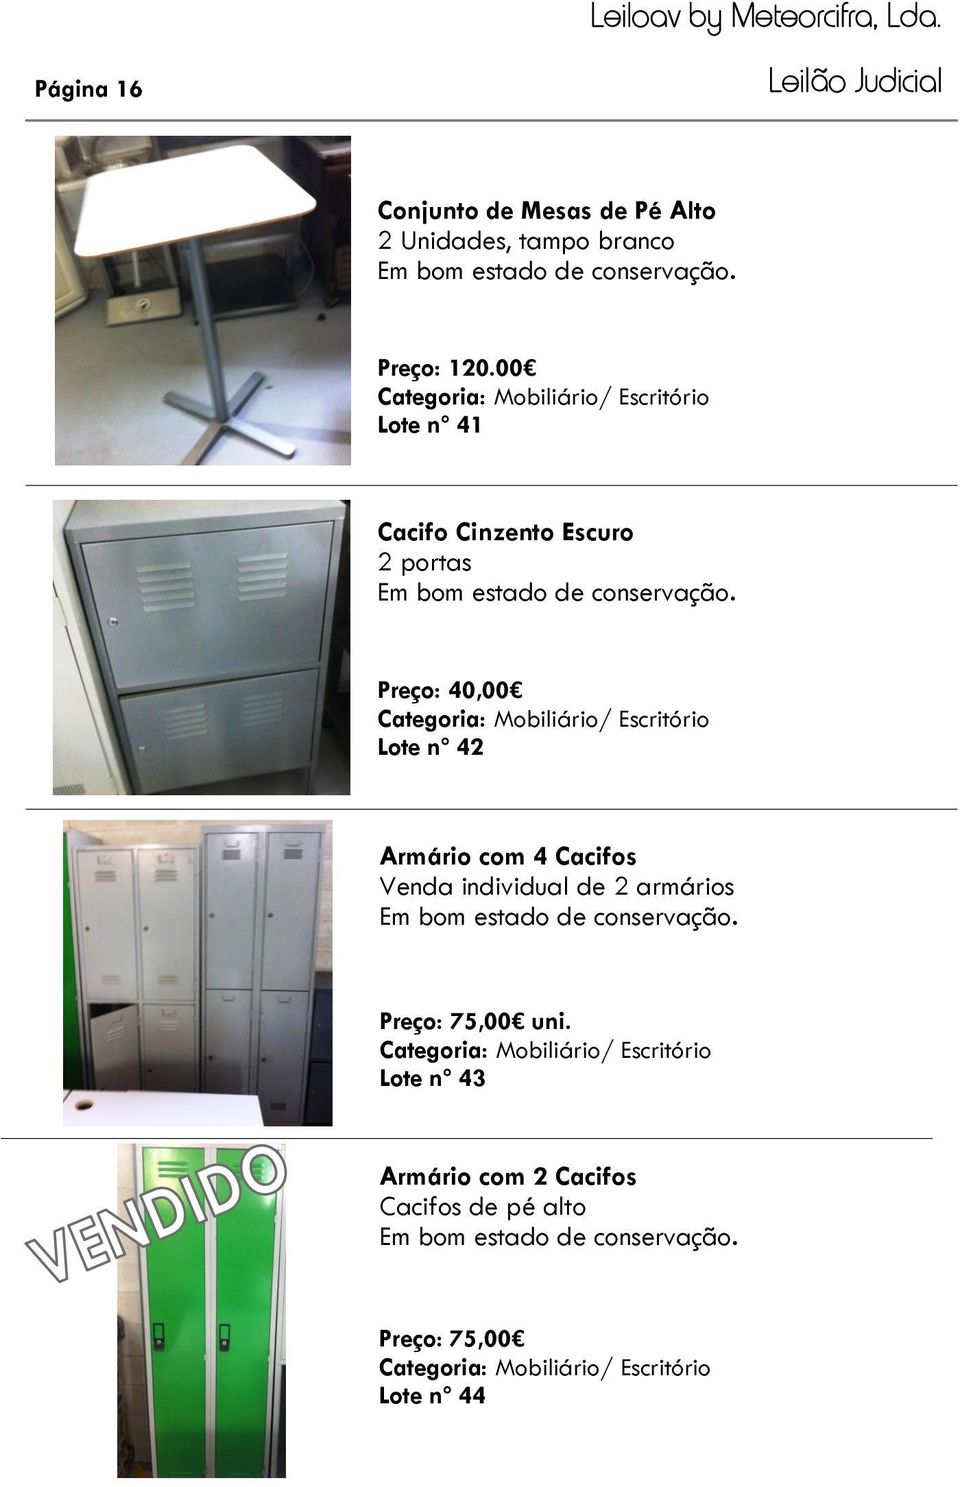 Mobiliário/ Escritório Lote nº 42 Armário com 4 Cacifos Venda individual de 2 armários Preço: 75,00 uni.